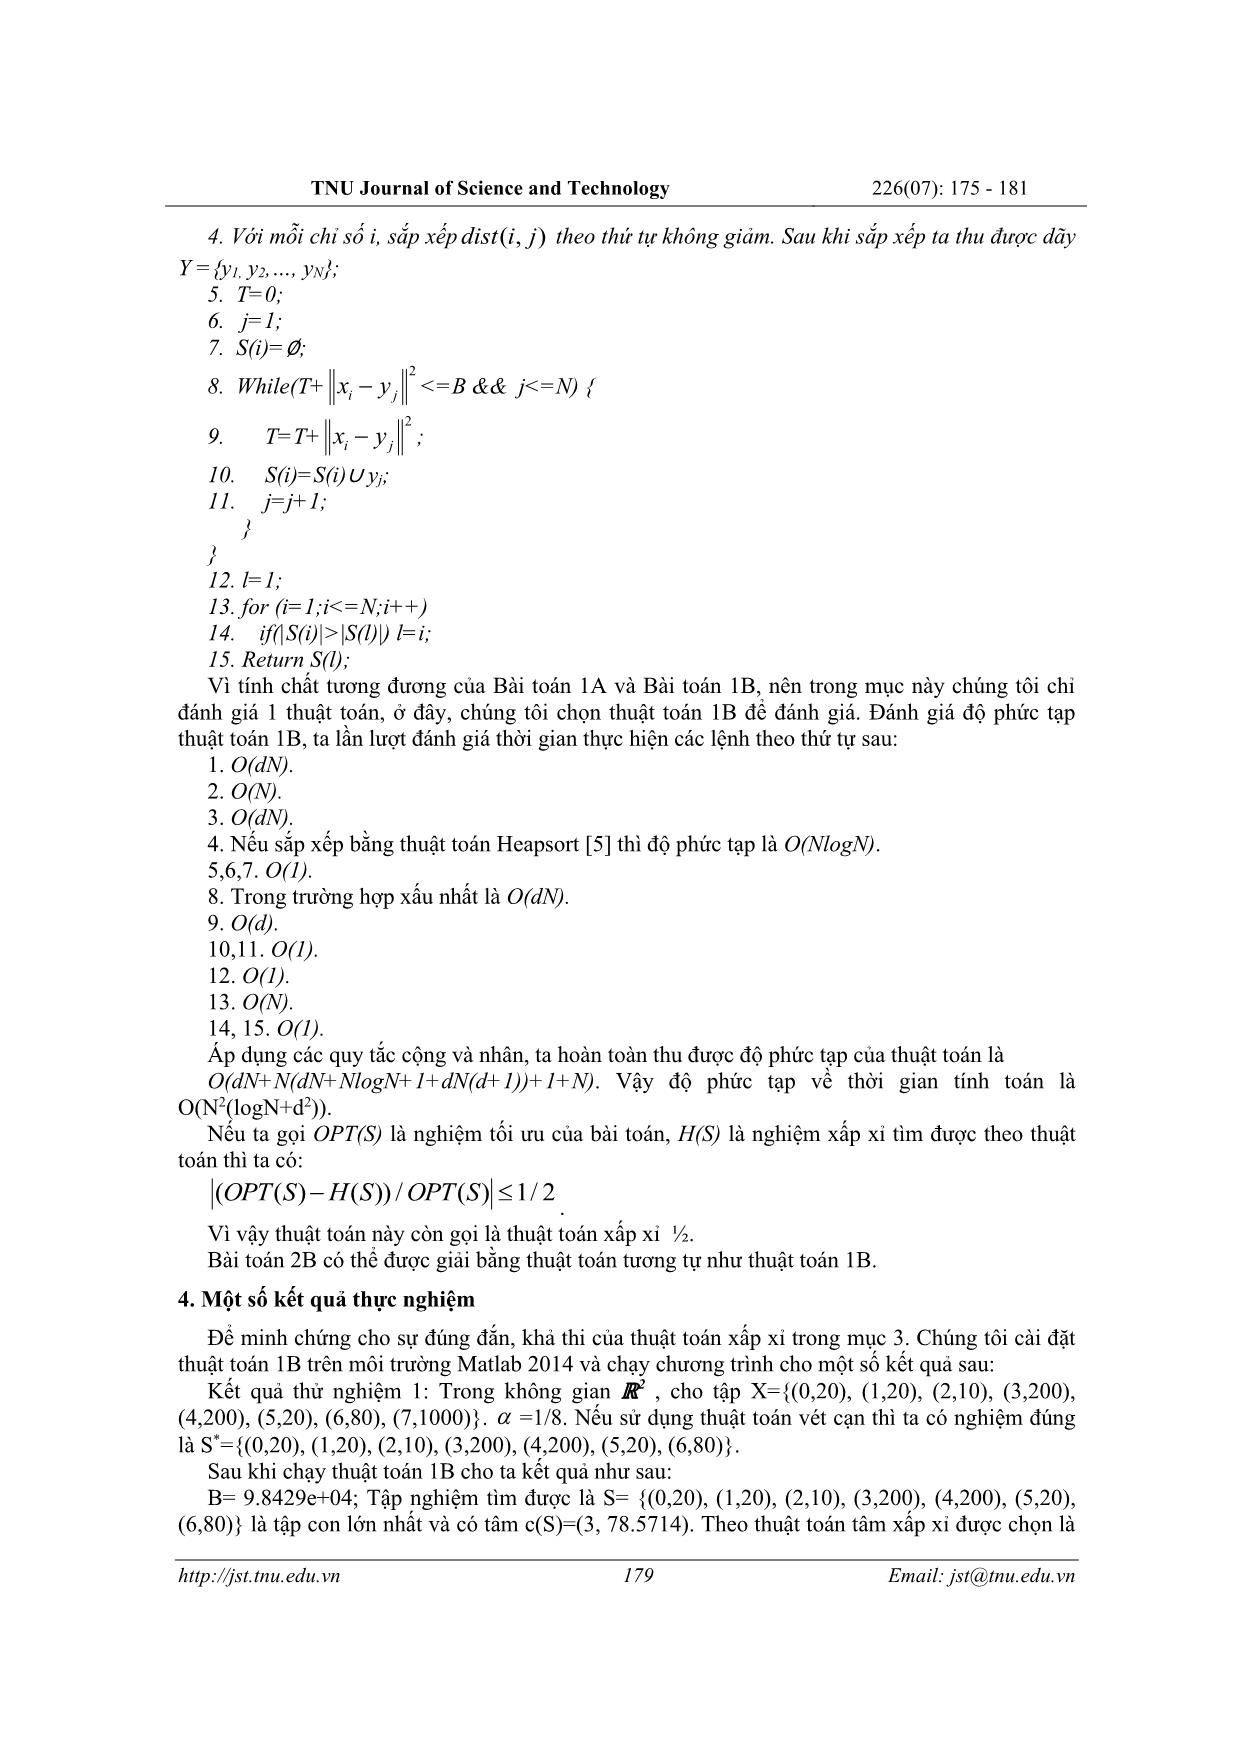 Thuật toán xấp xỉ và ứng dụng tìm nghiệm bài toán thuộc lớp NP - Khó trang 5